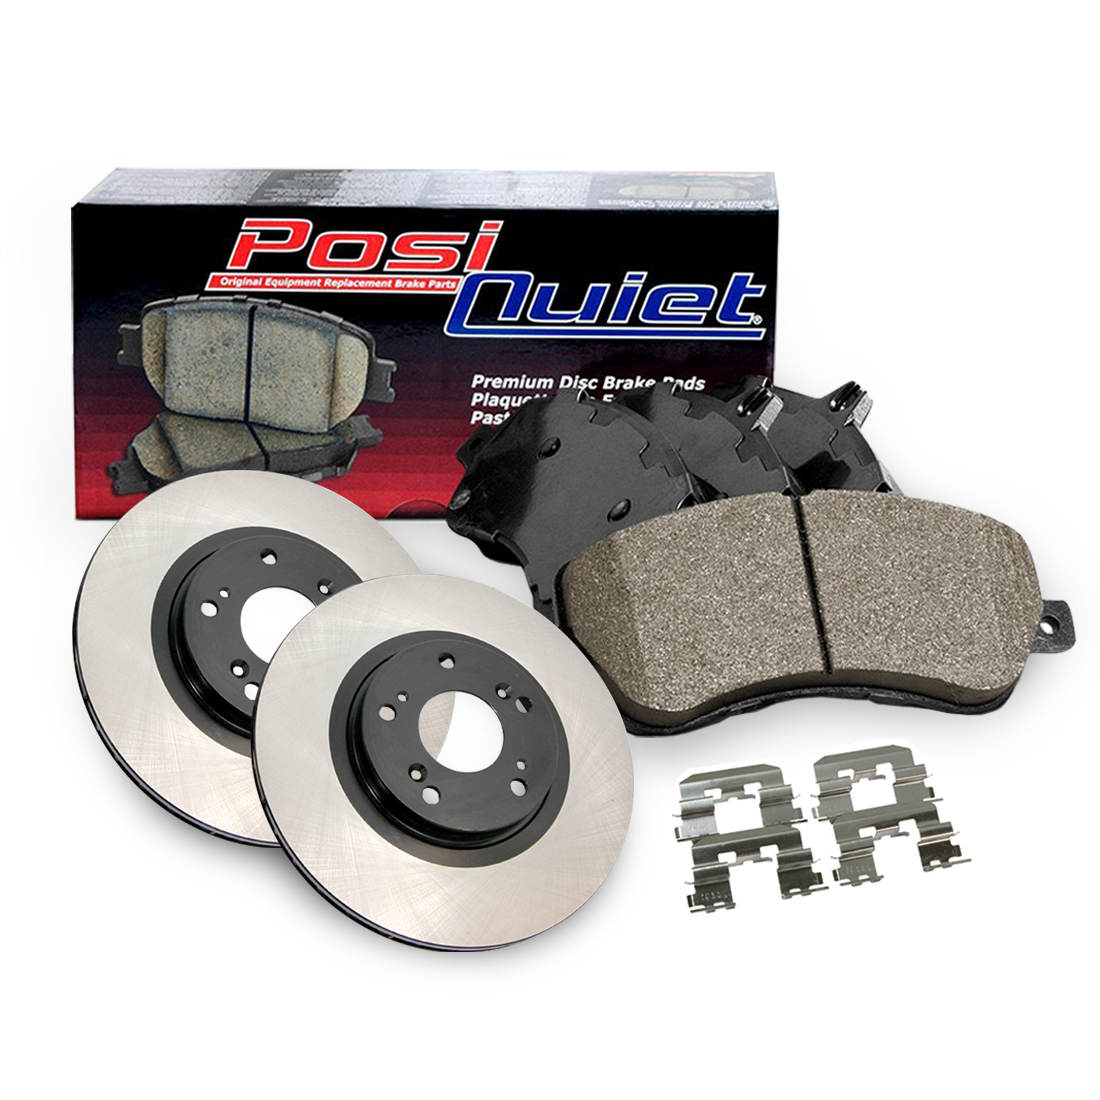 Centric Parts Front Premium Brake Rotor&Posi-Quiet Ceramic Pad 3PCS For 2003-2009 Lexus GX470